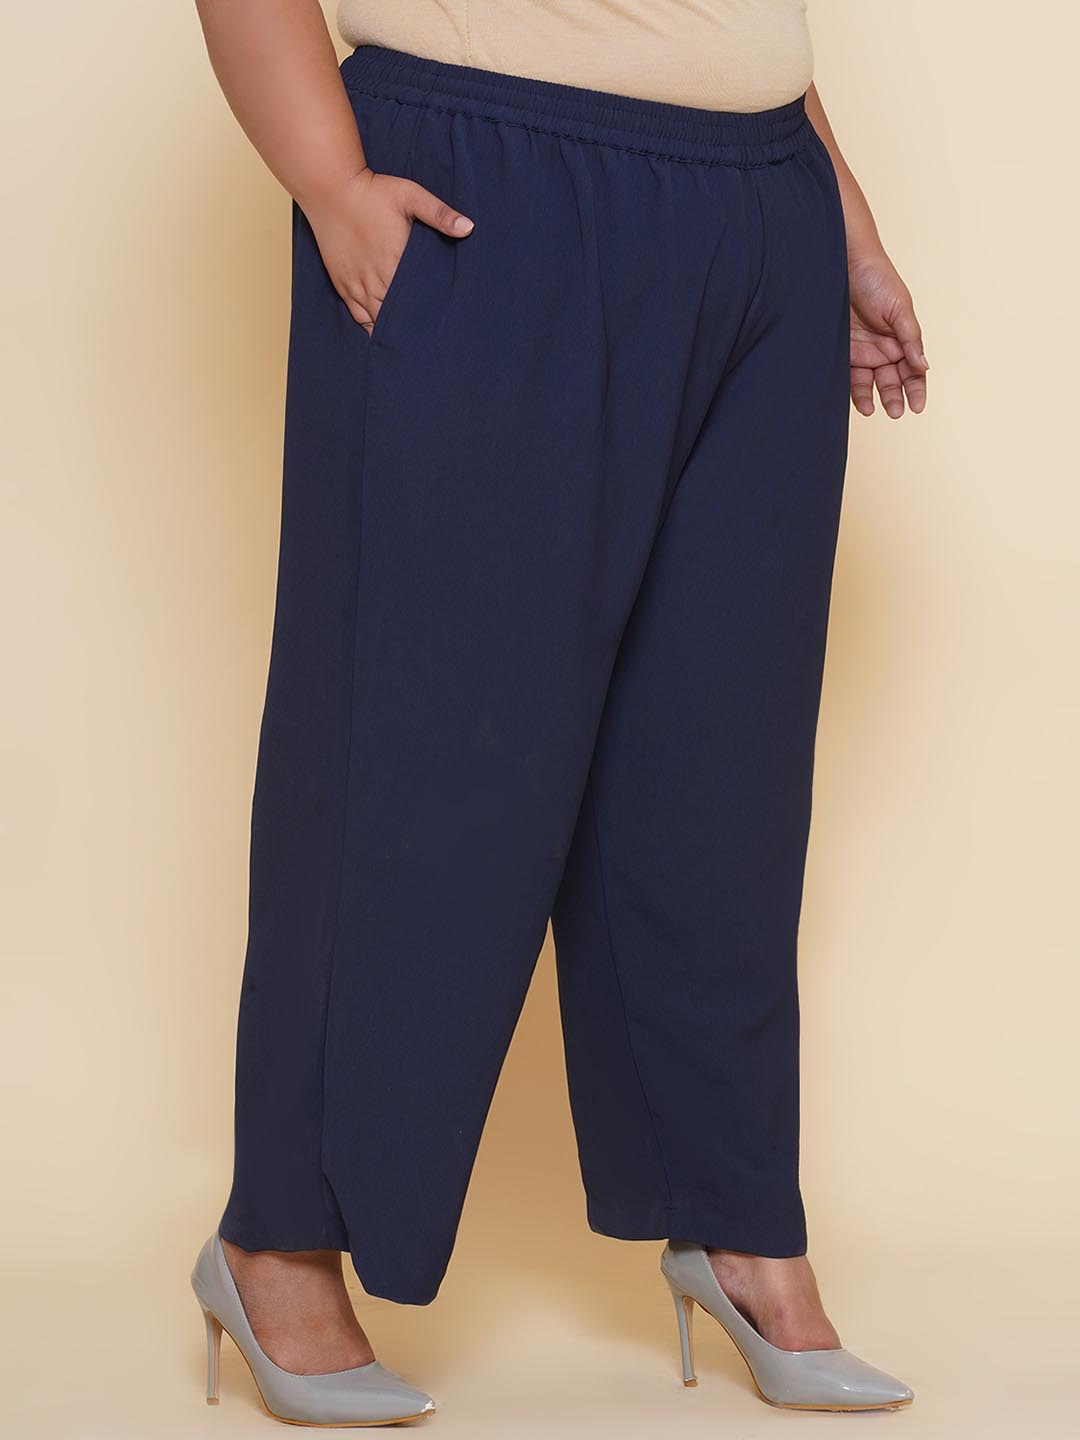 bottomwear_kiaahvi/trousers/KIPL9002/kipl9002-3.jpg